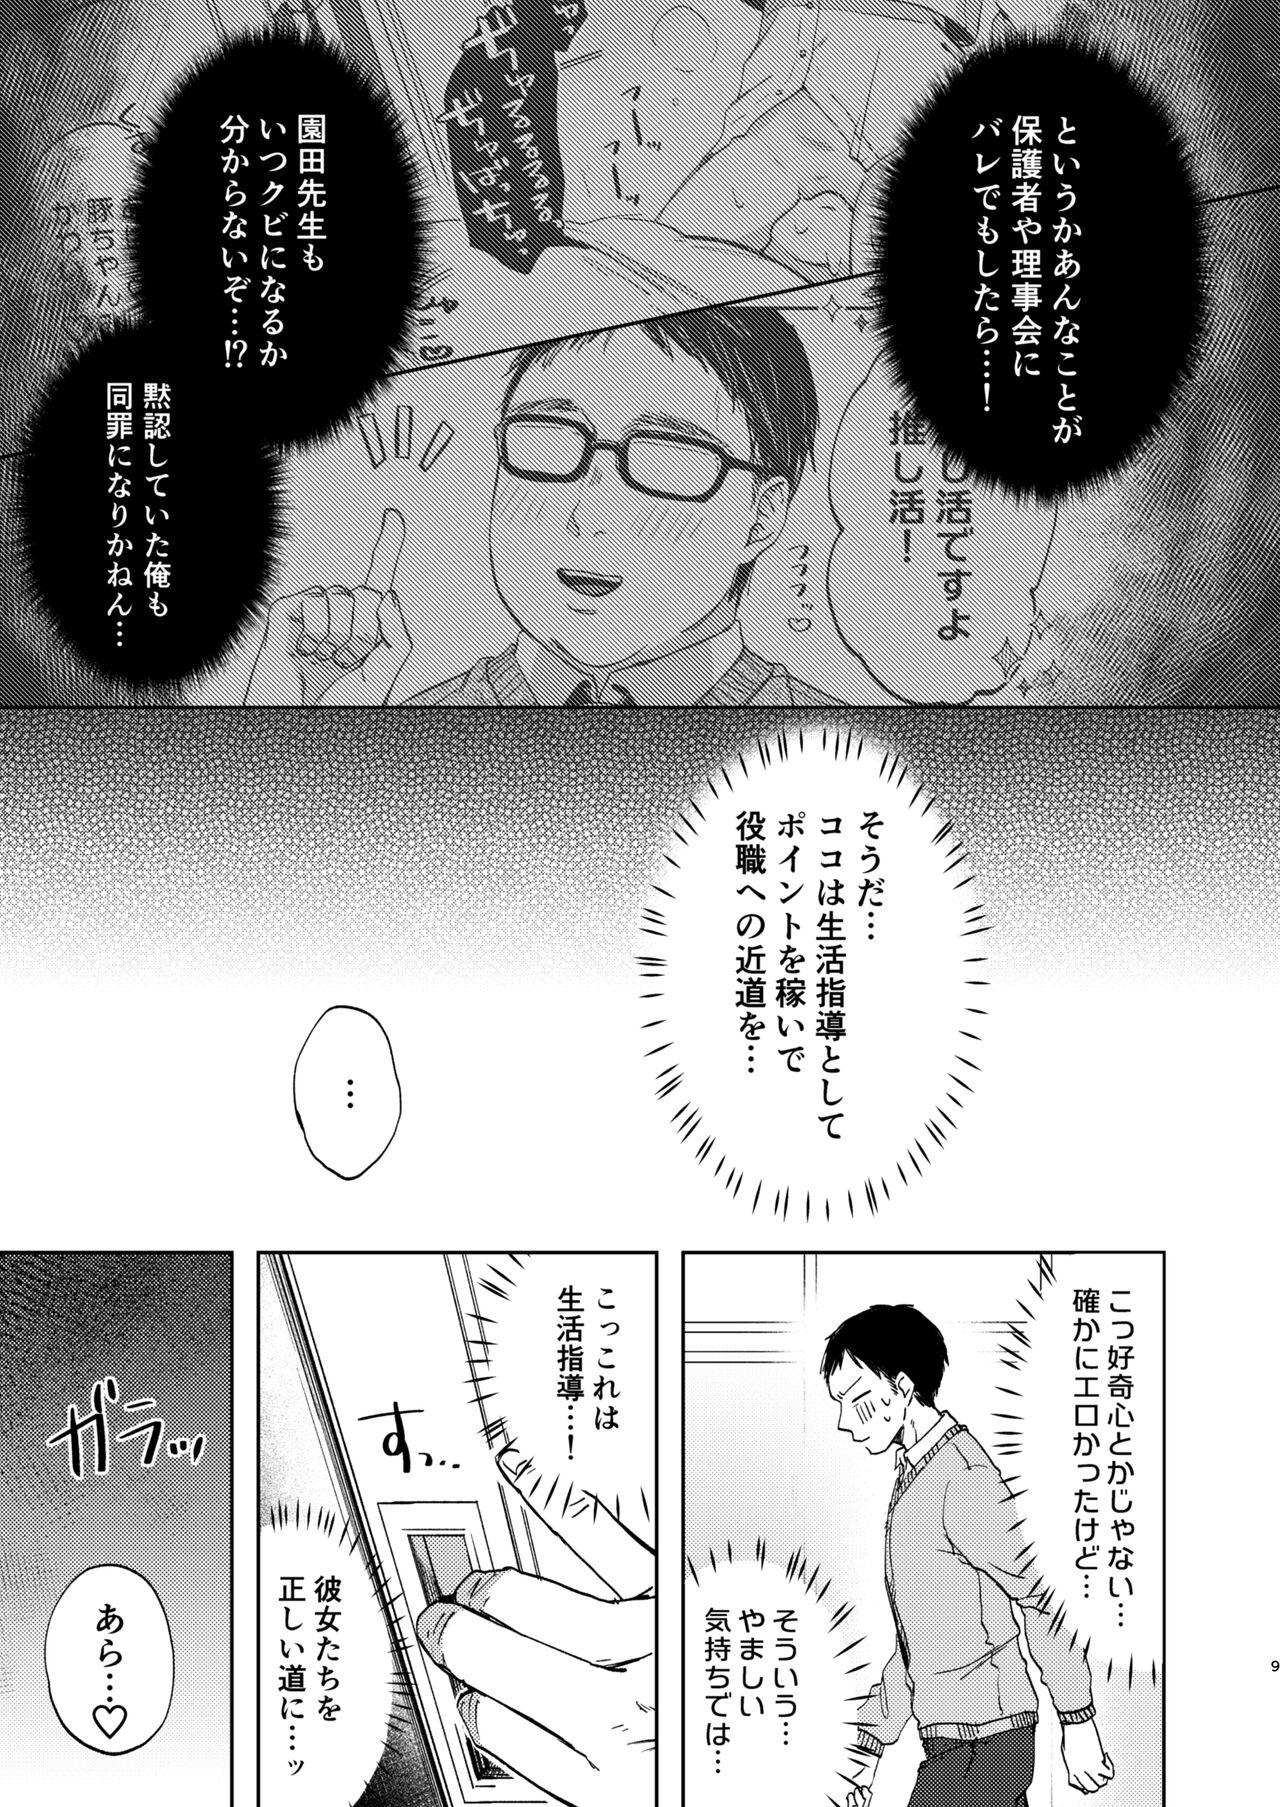 Desperate Kono Gakuen ni wa Himitsu no Shibo sei-bu ga arurashi… - Original Bdsm - Page 10